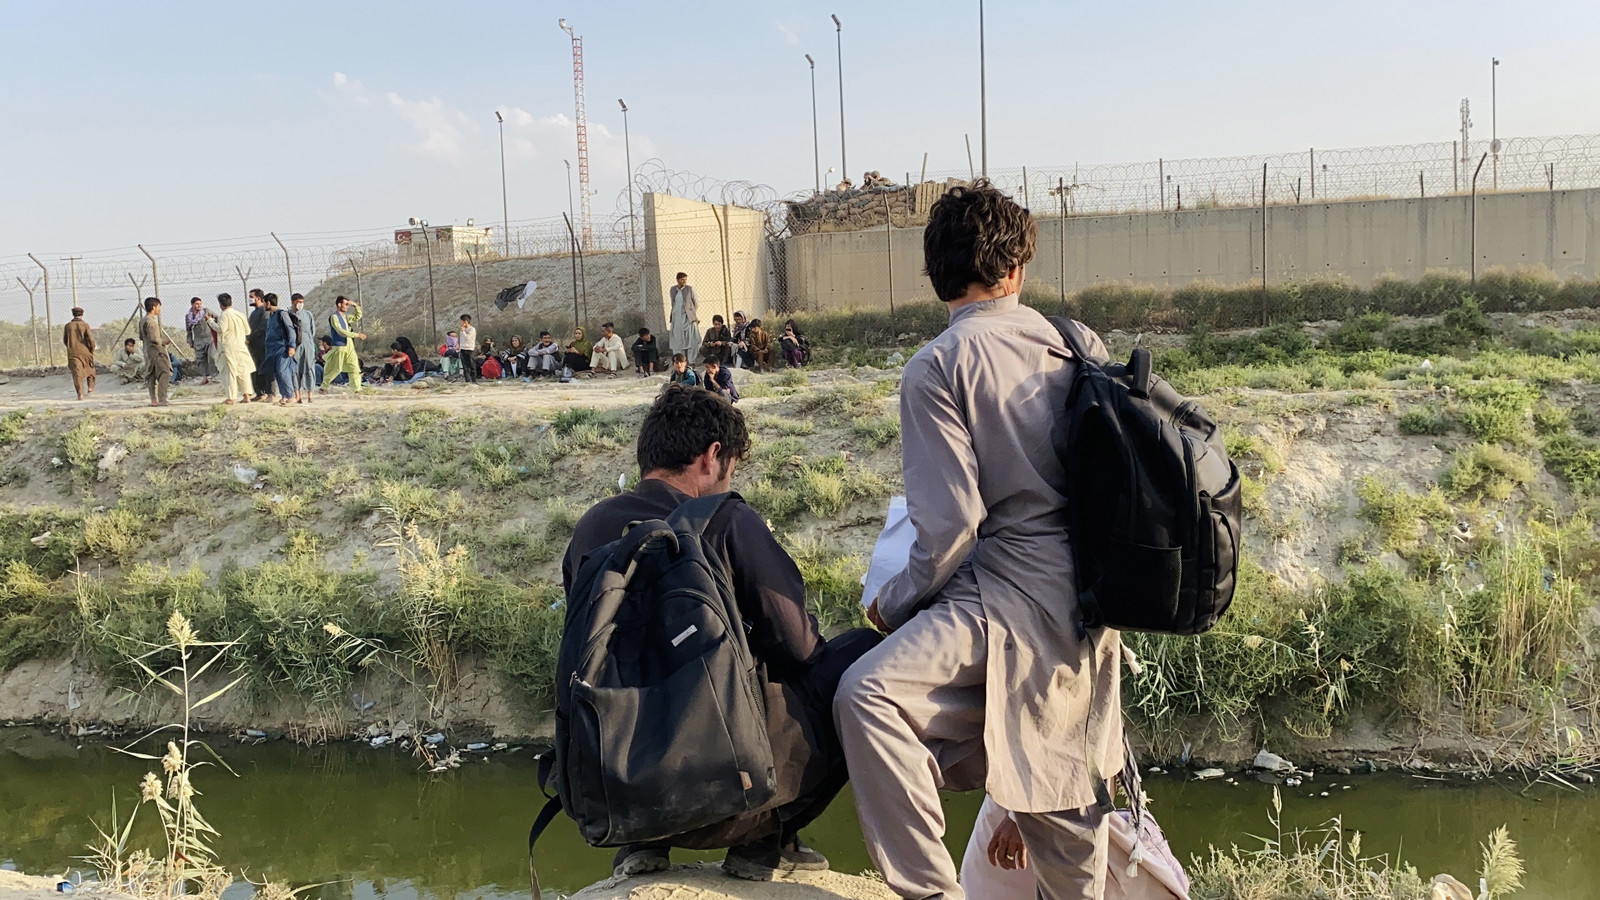 Des personnes tentent d'entrer dans l'aéroport international Hamid Karzai, pour fuir le pays, à Kaboul, en Afghanistan, le 23 août 2021.